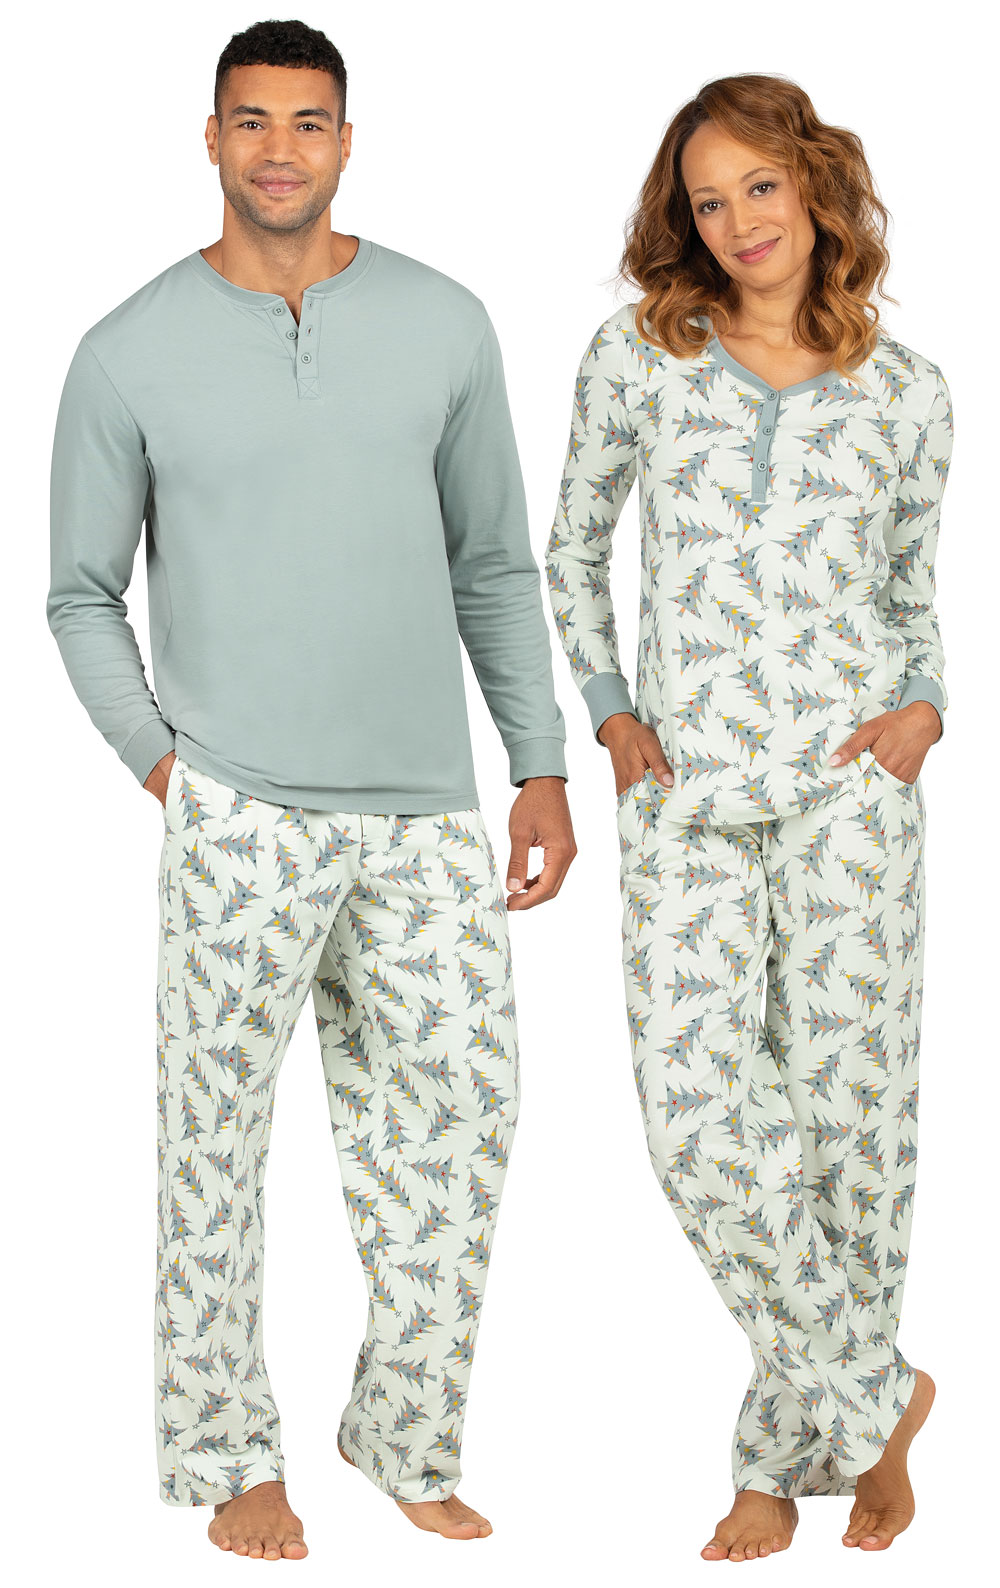 Balsam & Pine His & Hers Matching Pajamas